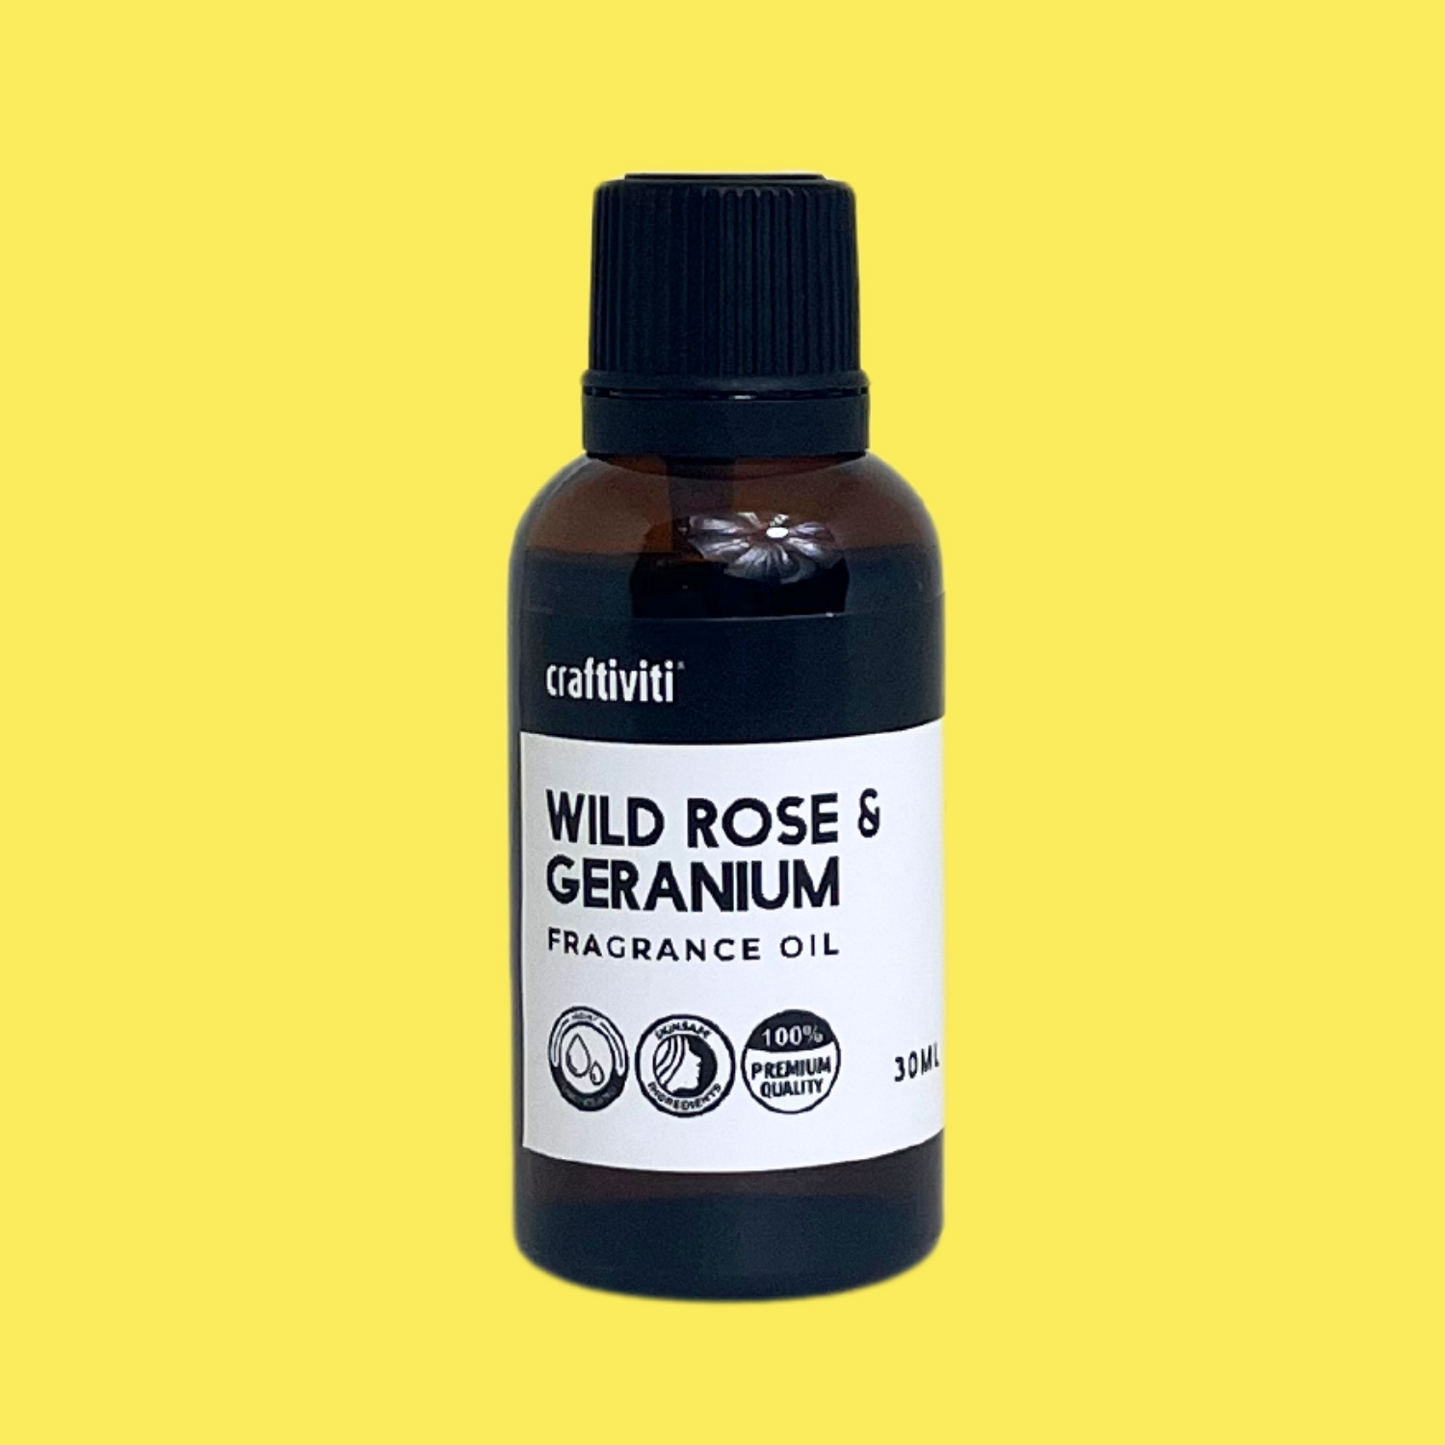 Wild Rose & Geranium Fragrance Oil